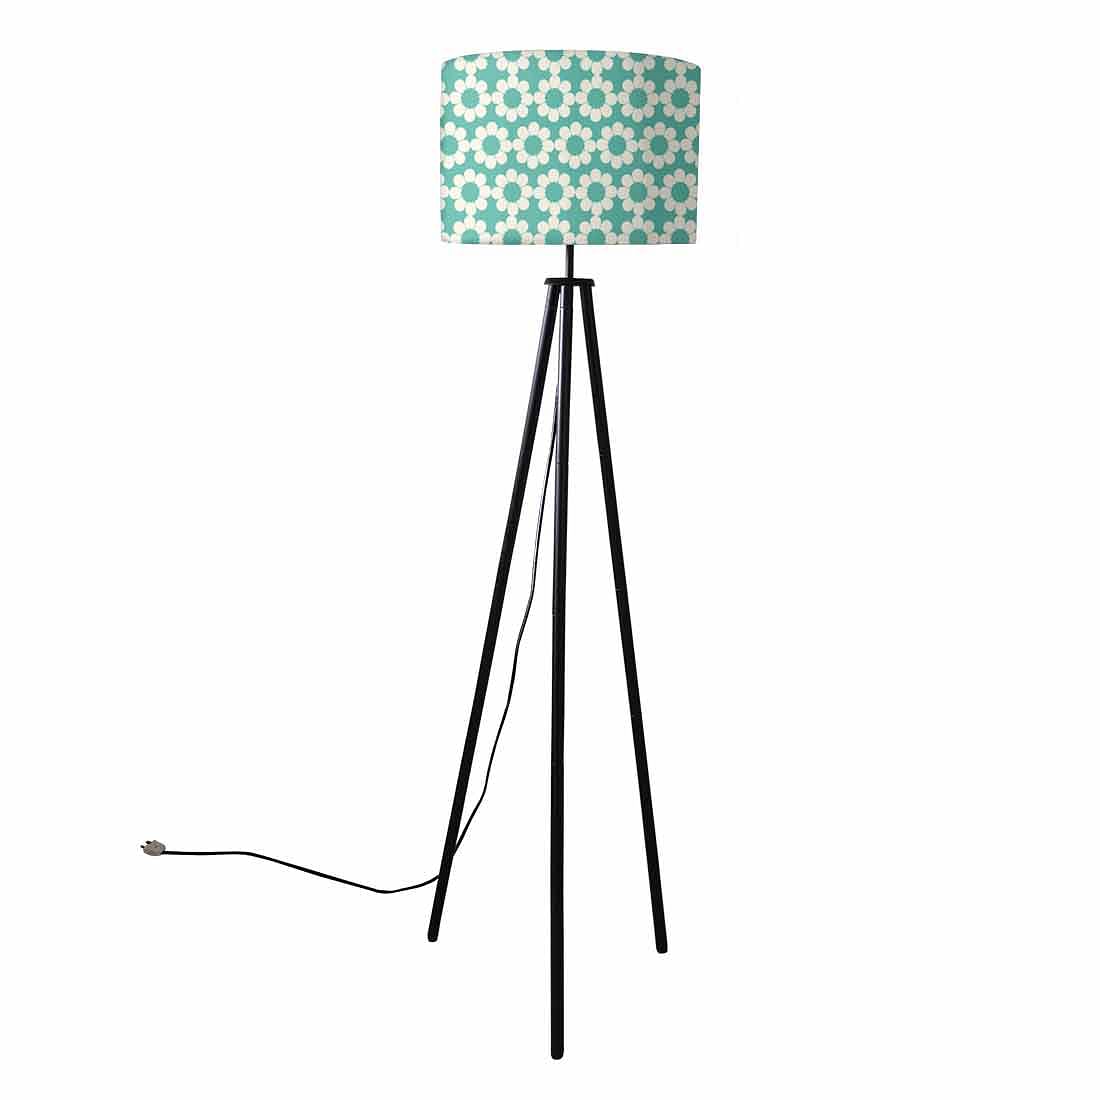 Metal Tripod Standing Floor Lamp for Bedside Light- Teal Patterns Nutcase